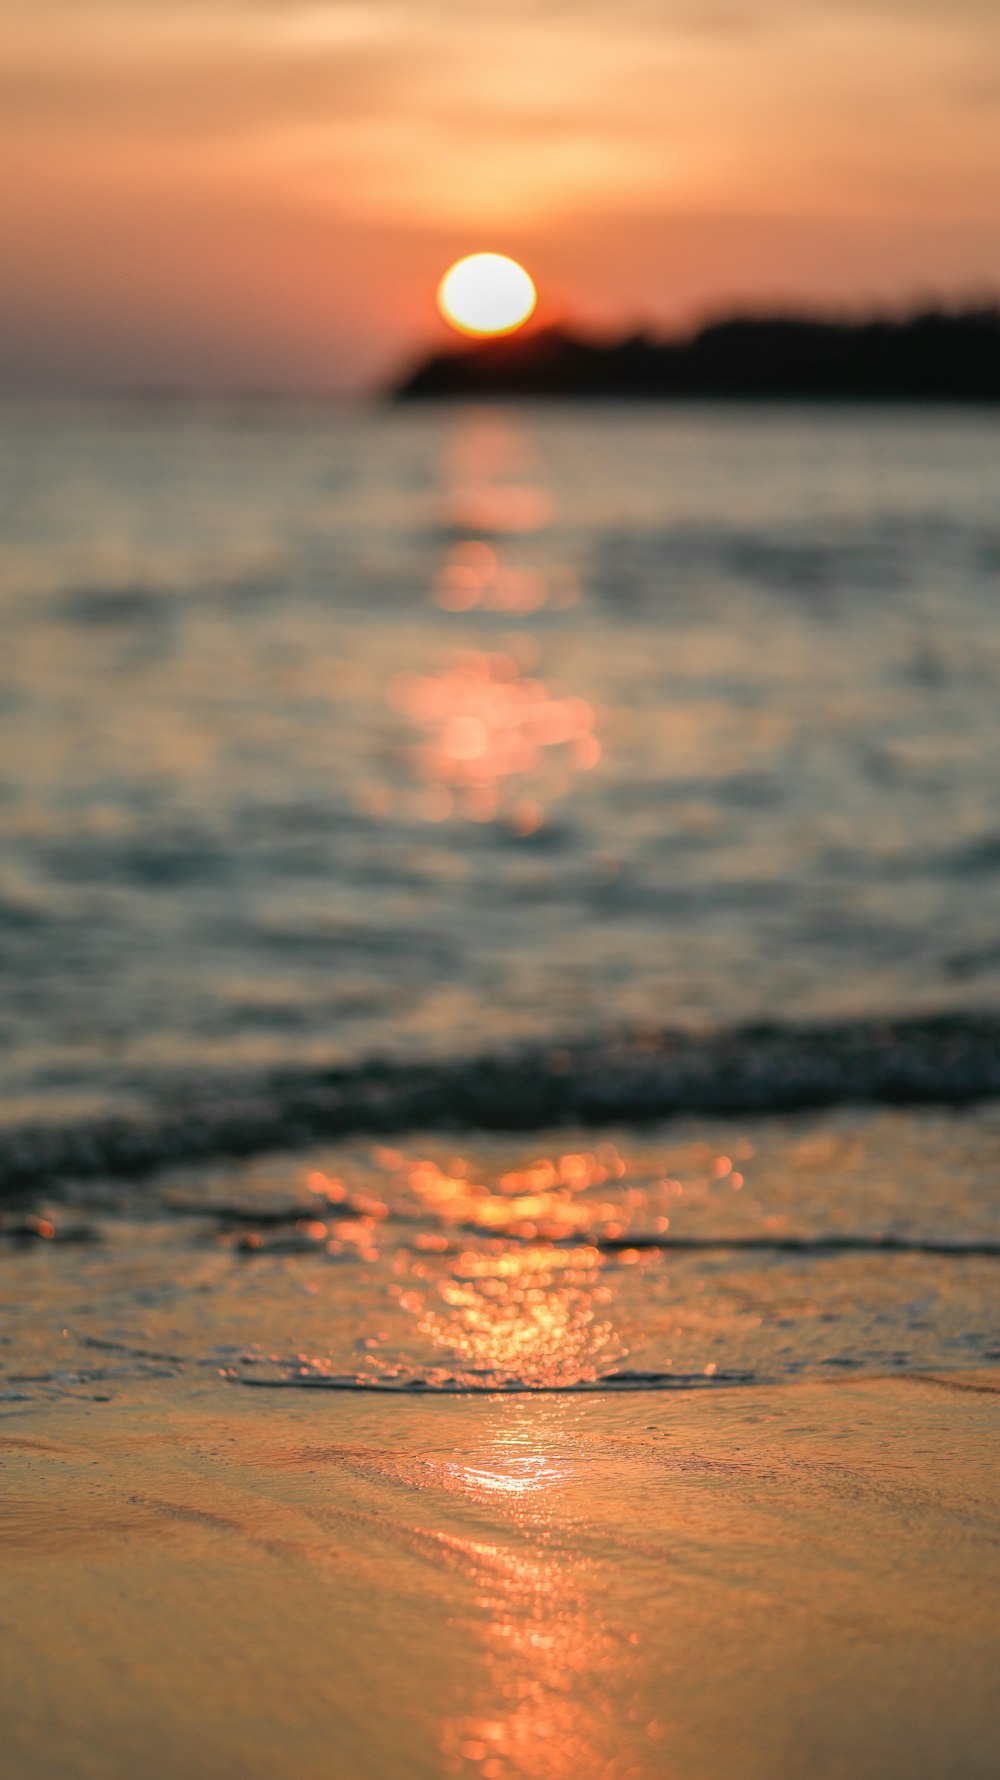 Photographie sélective du rivage pendant l’heure dorée